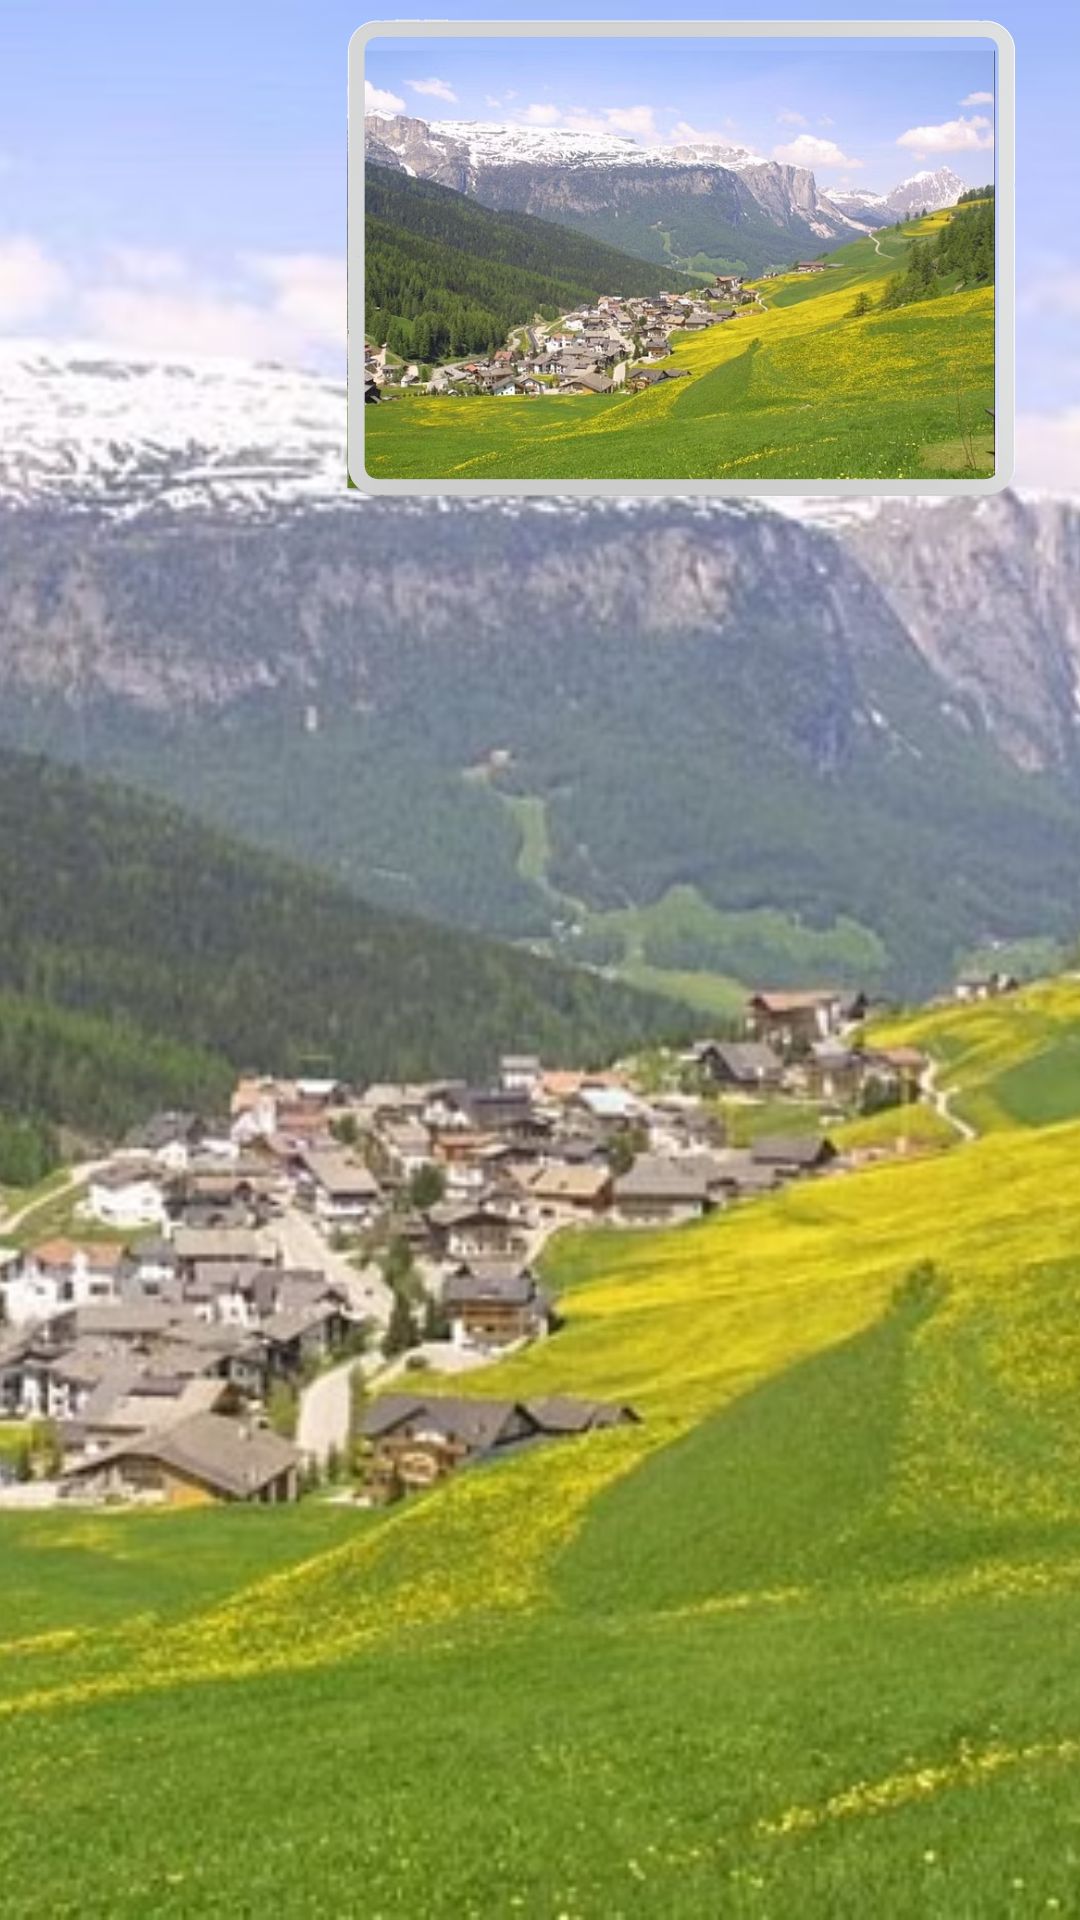 दुनिया के 8 सबसे खूबसूरत गांव, देखें यहां